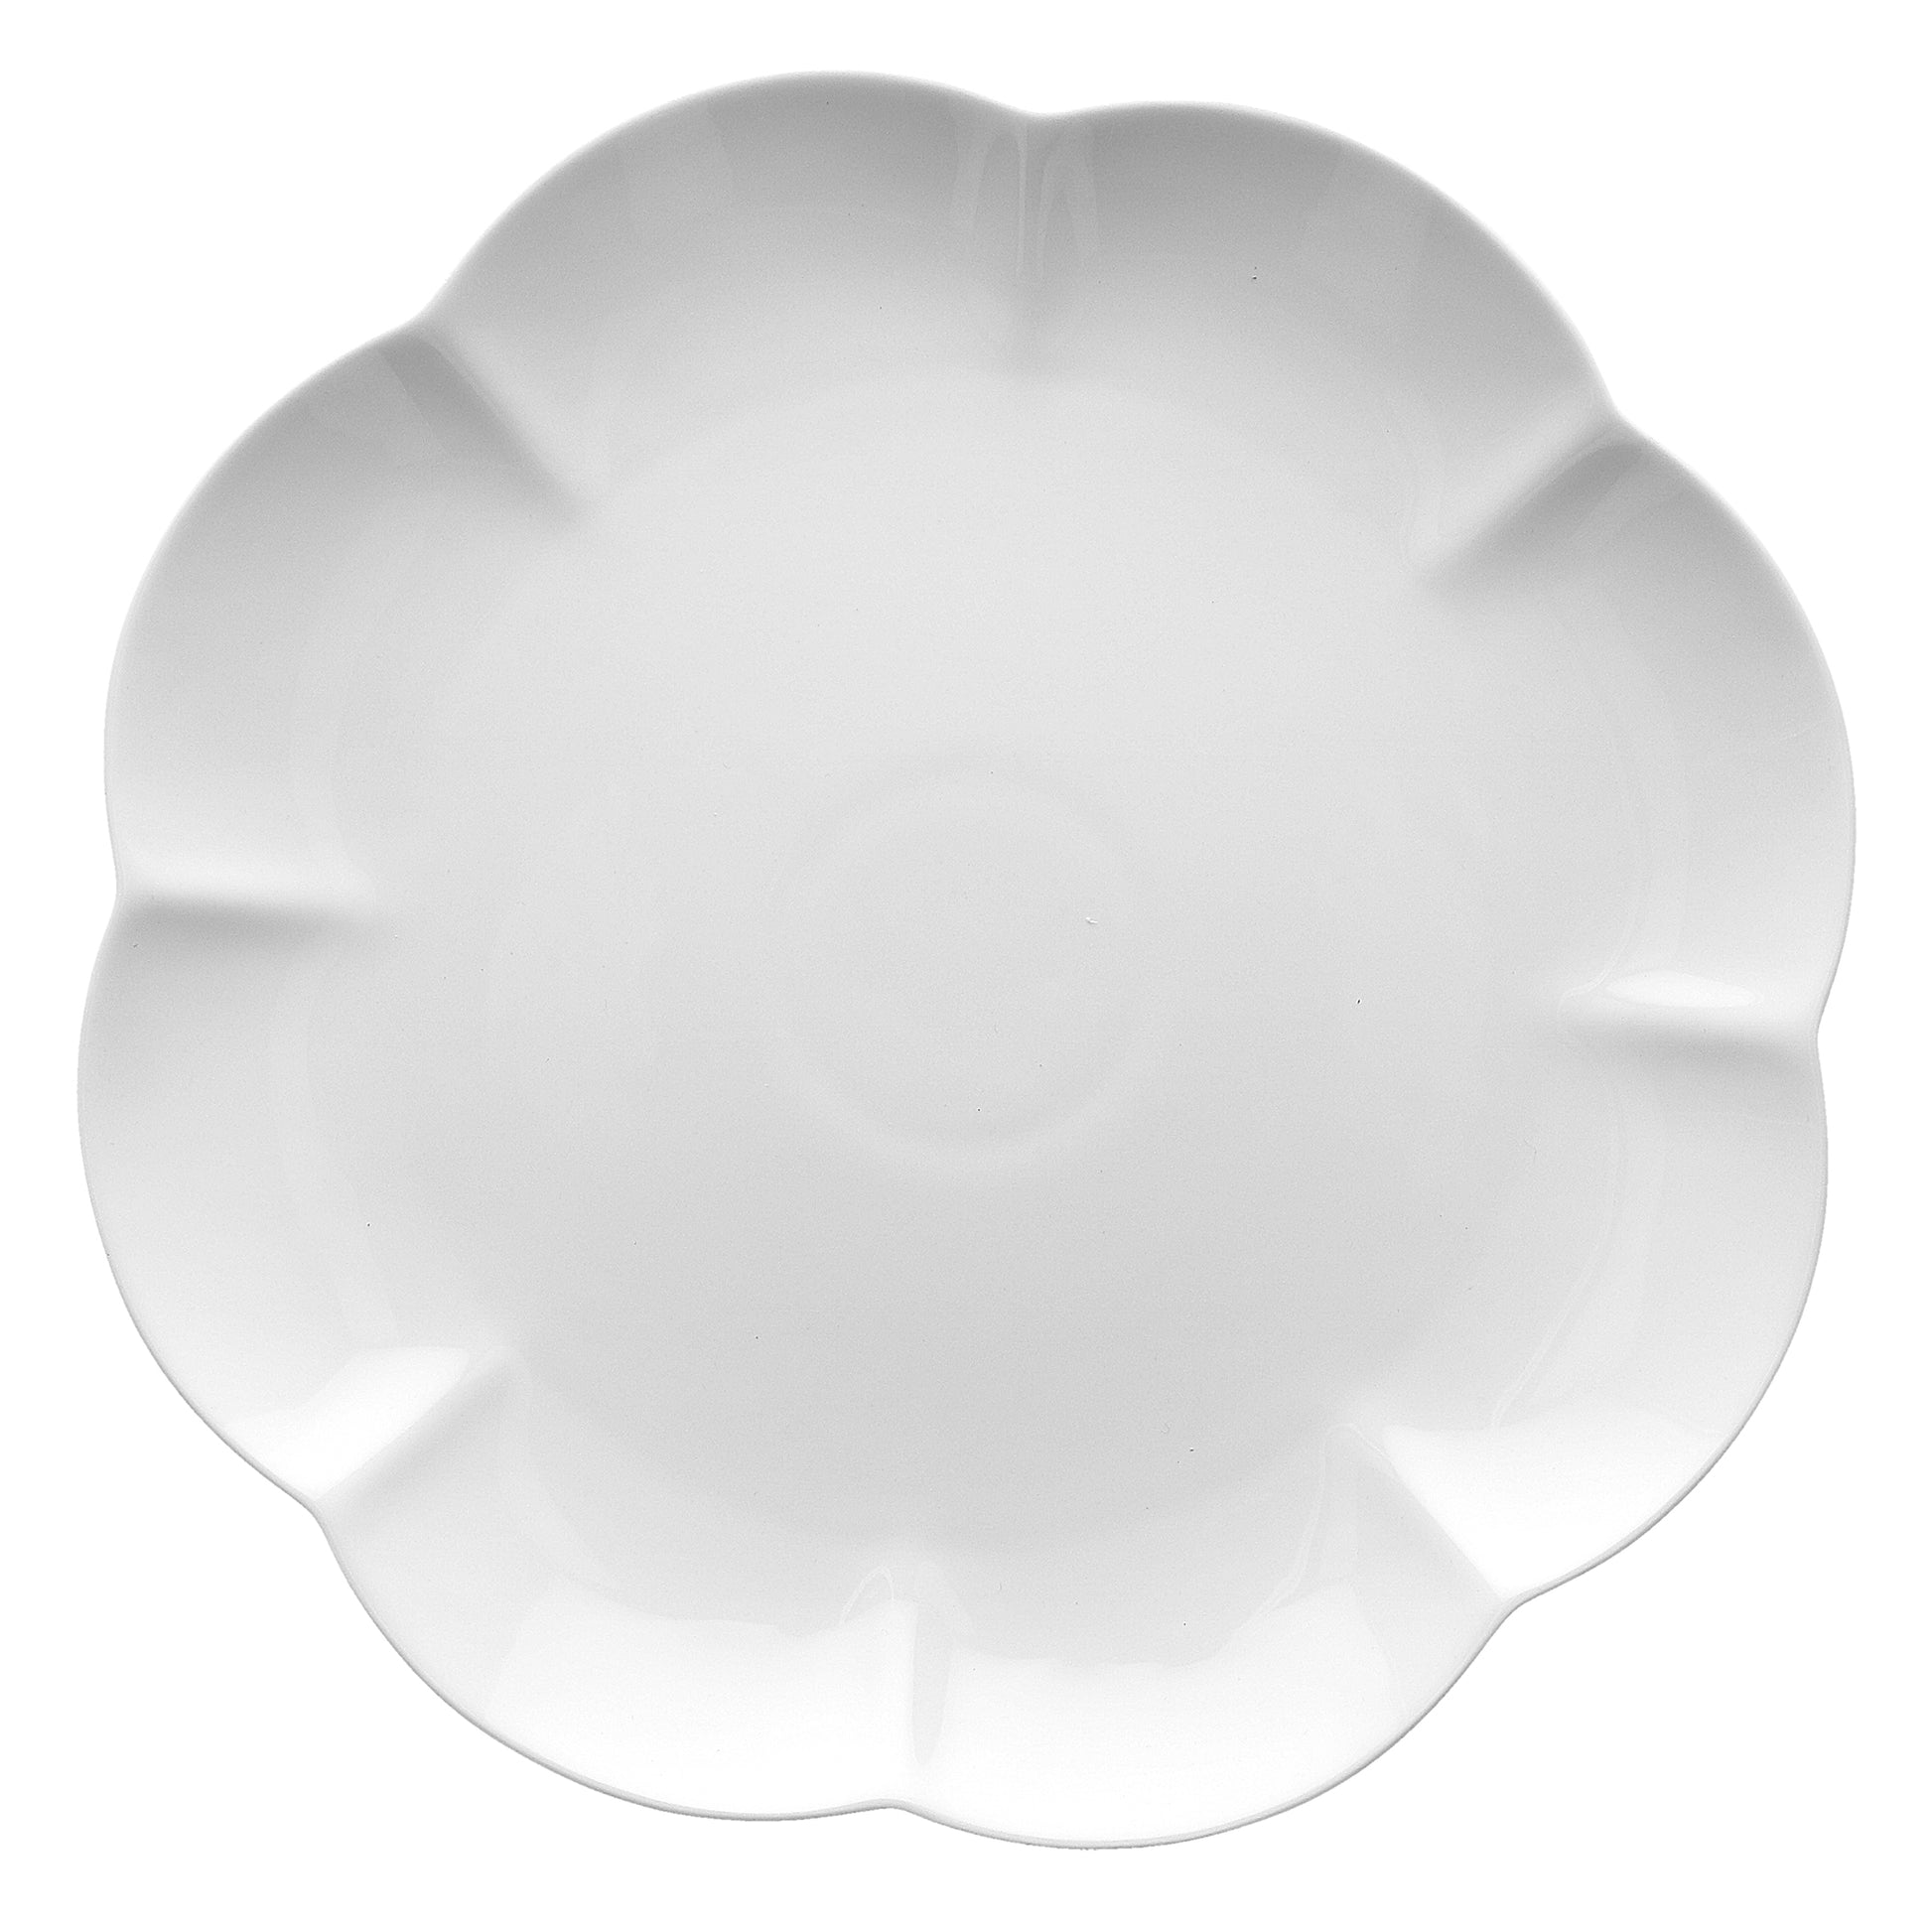 Vassoio piatto rotondo in porcellana bianca cm. 31.Utilizzabile in forno tradizionale, microonde e lavastoviglie. Assapora la gioia dei momenti conviviali